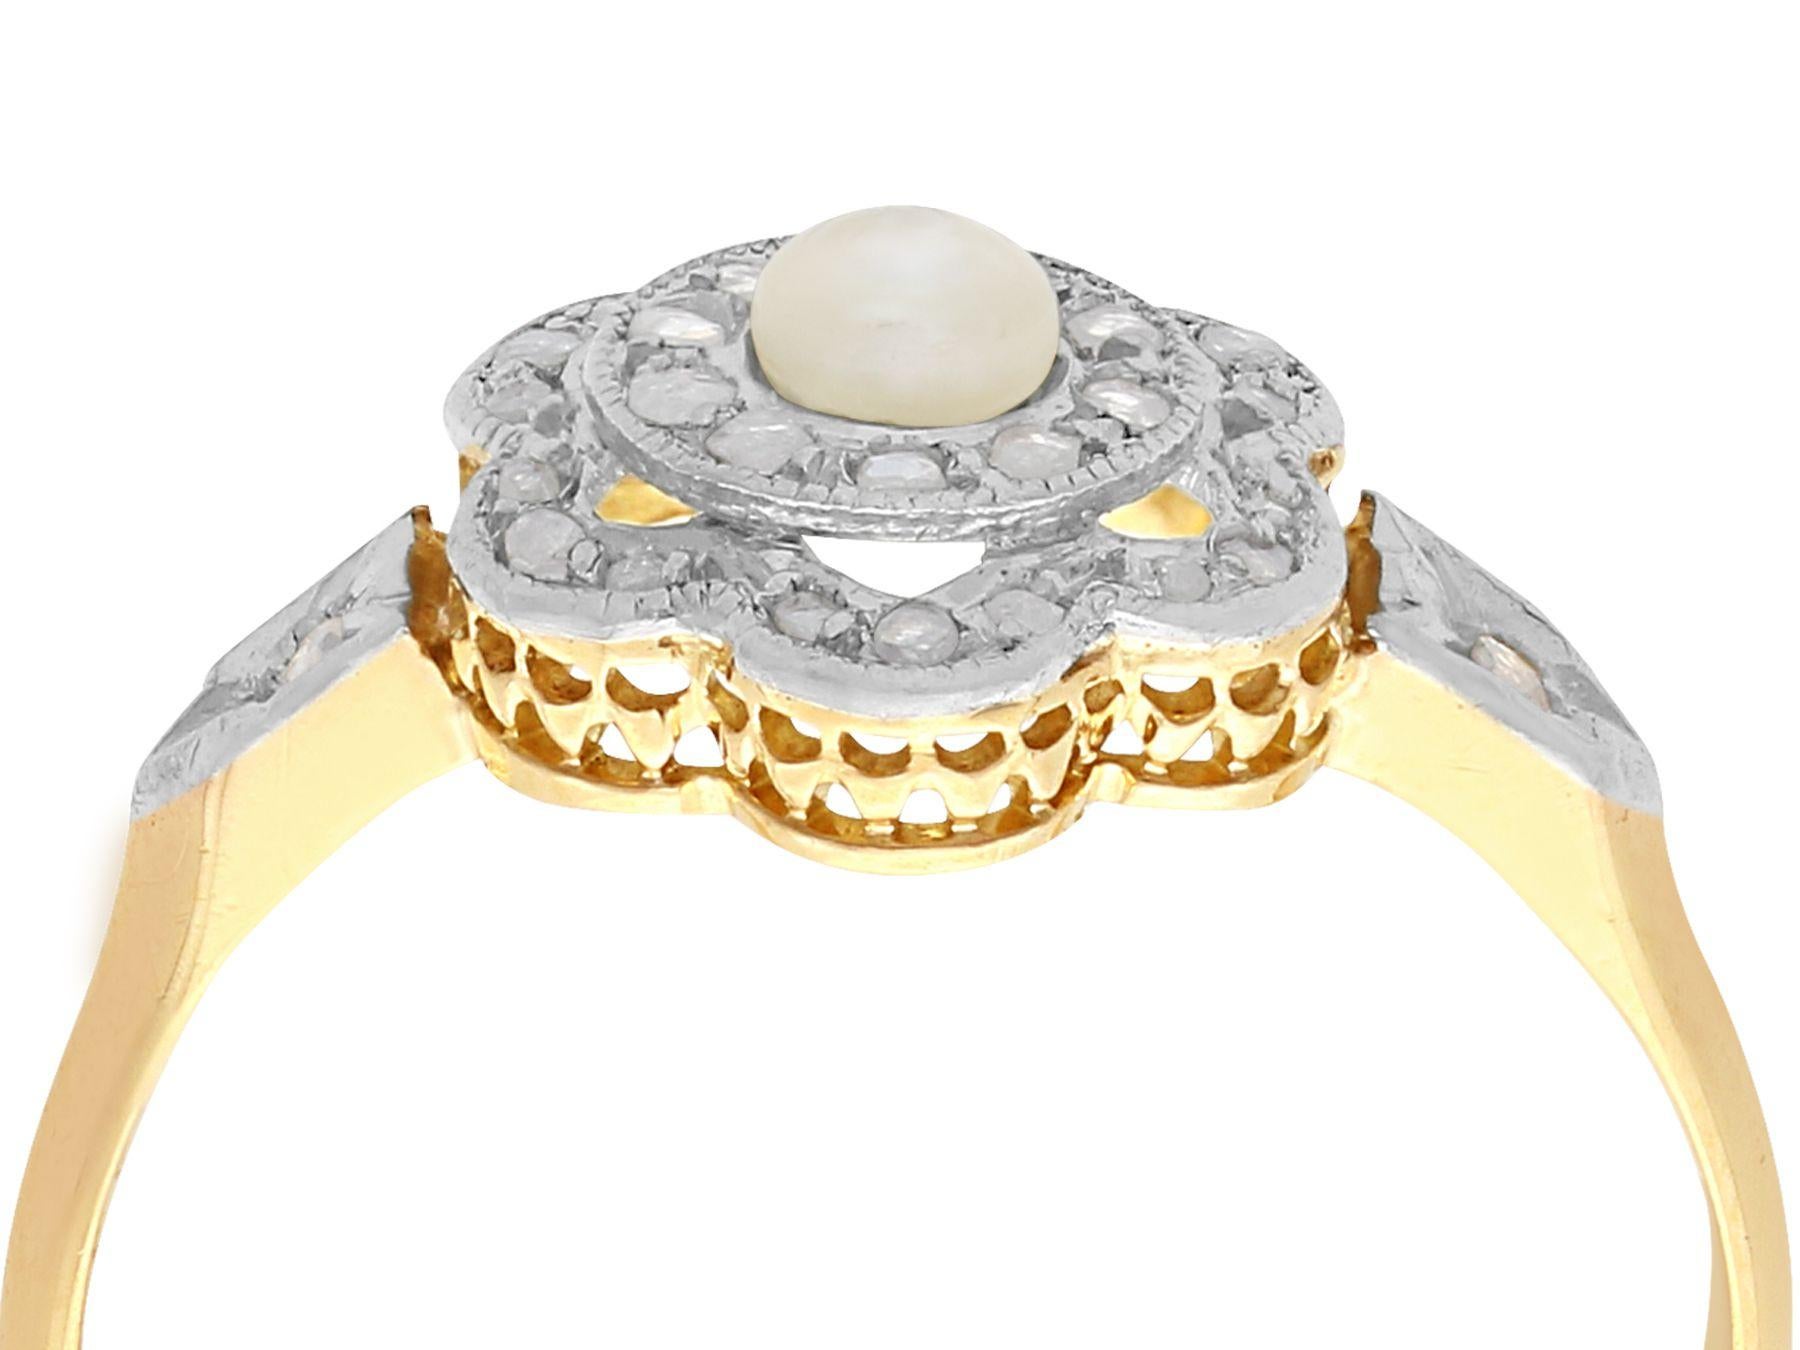 Eine beeindruckende antike Französisch 0,18 Karat Diamant und Perle, 18 Karat Gelb-und Weißgold Kleid Ring; Teil unserer vielfältigen antiken Schmucksammlungen.

Dieser feine und beeindruckende Ring aus Saatperlen und Diamanten ist aus 18 Karat